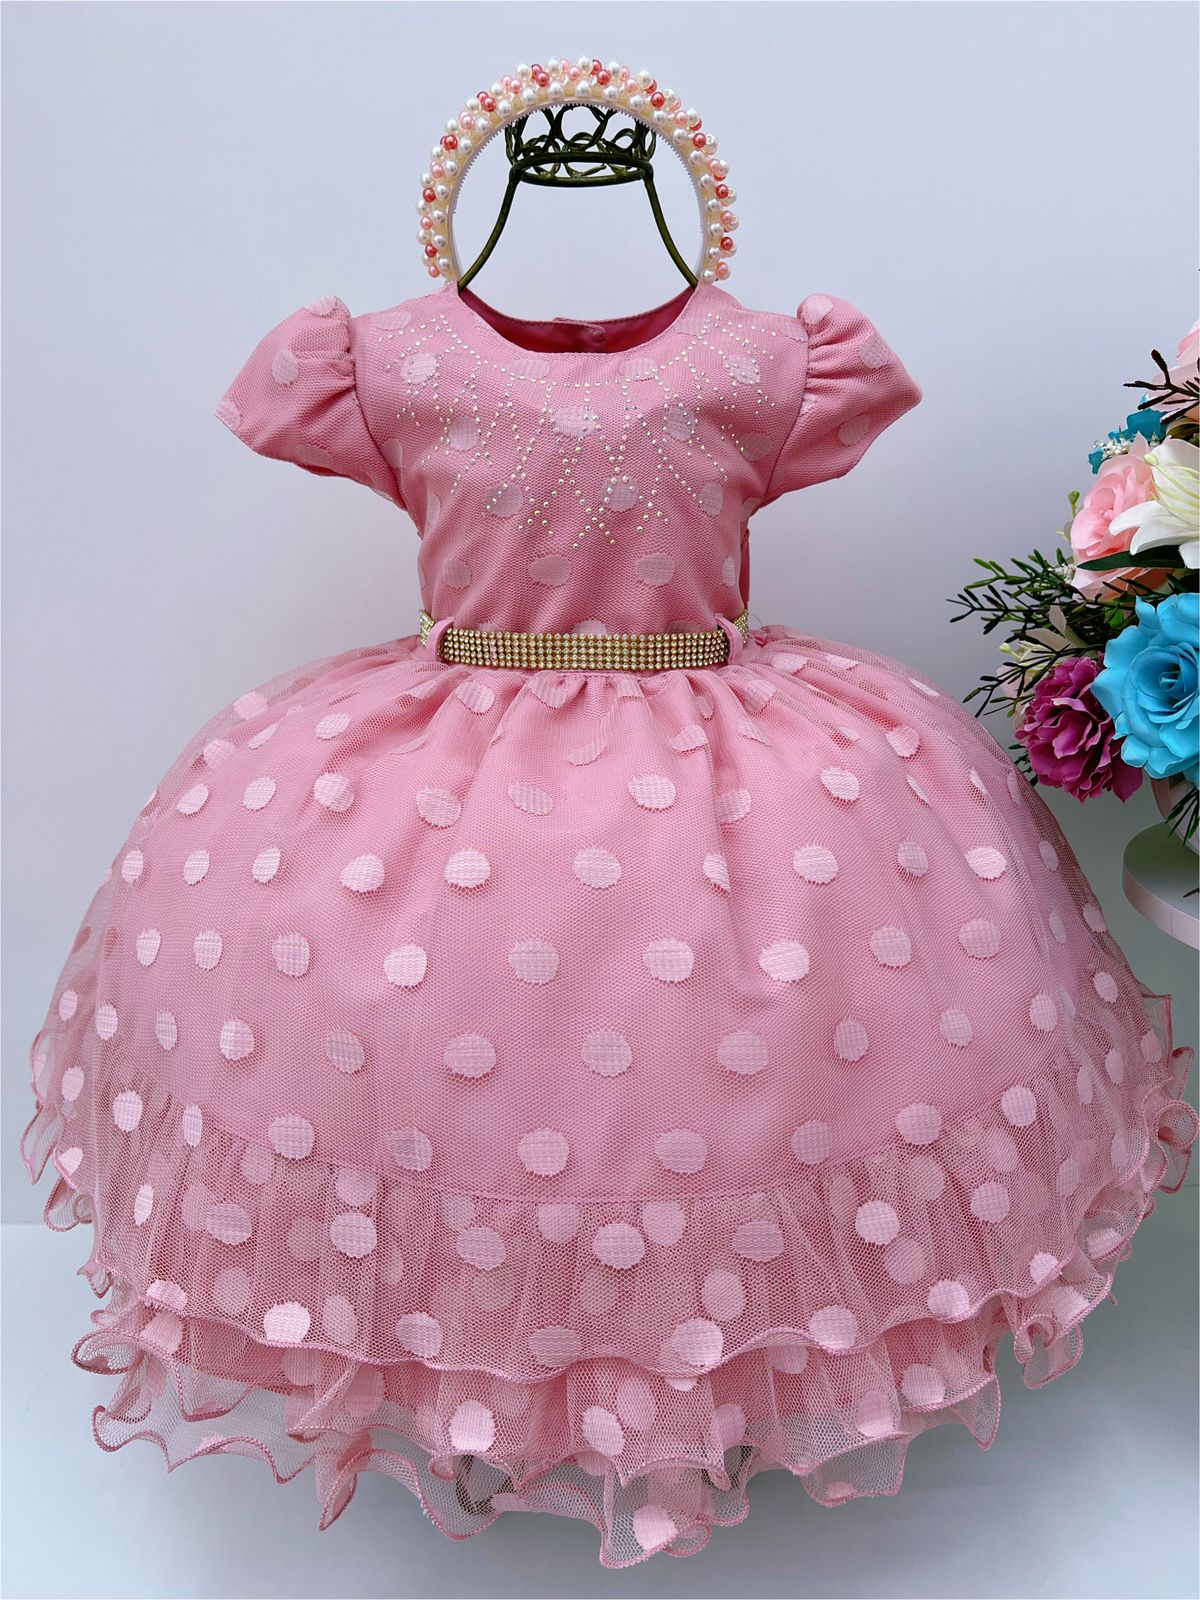 Vestido Infantil Rosê Bolinhas e Cinto de Strass